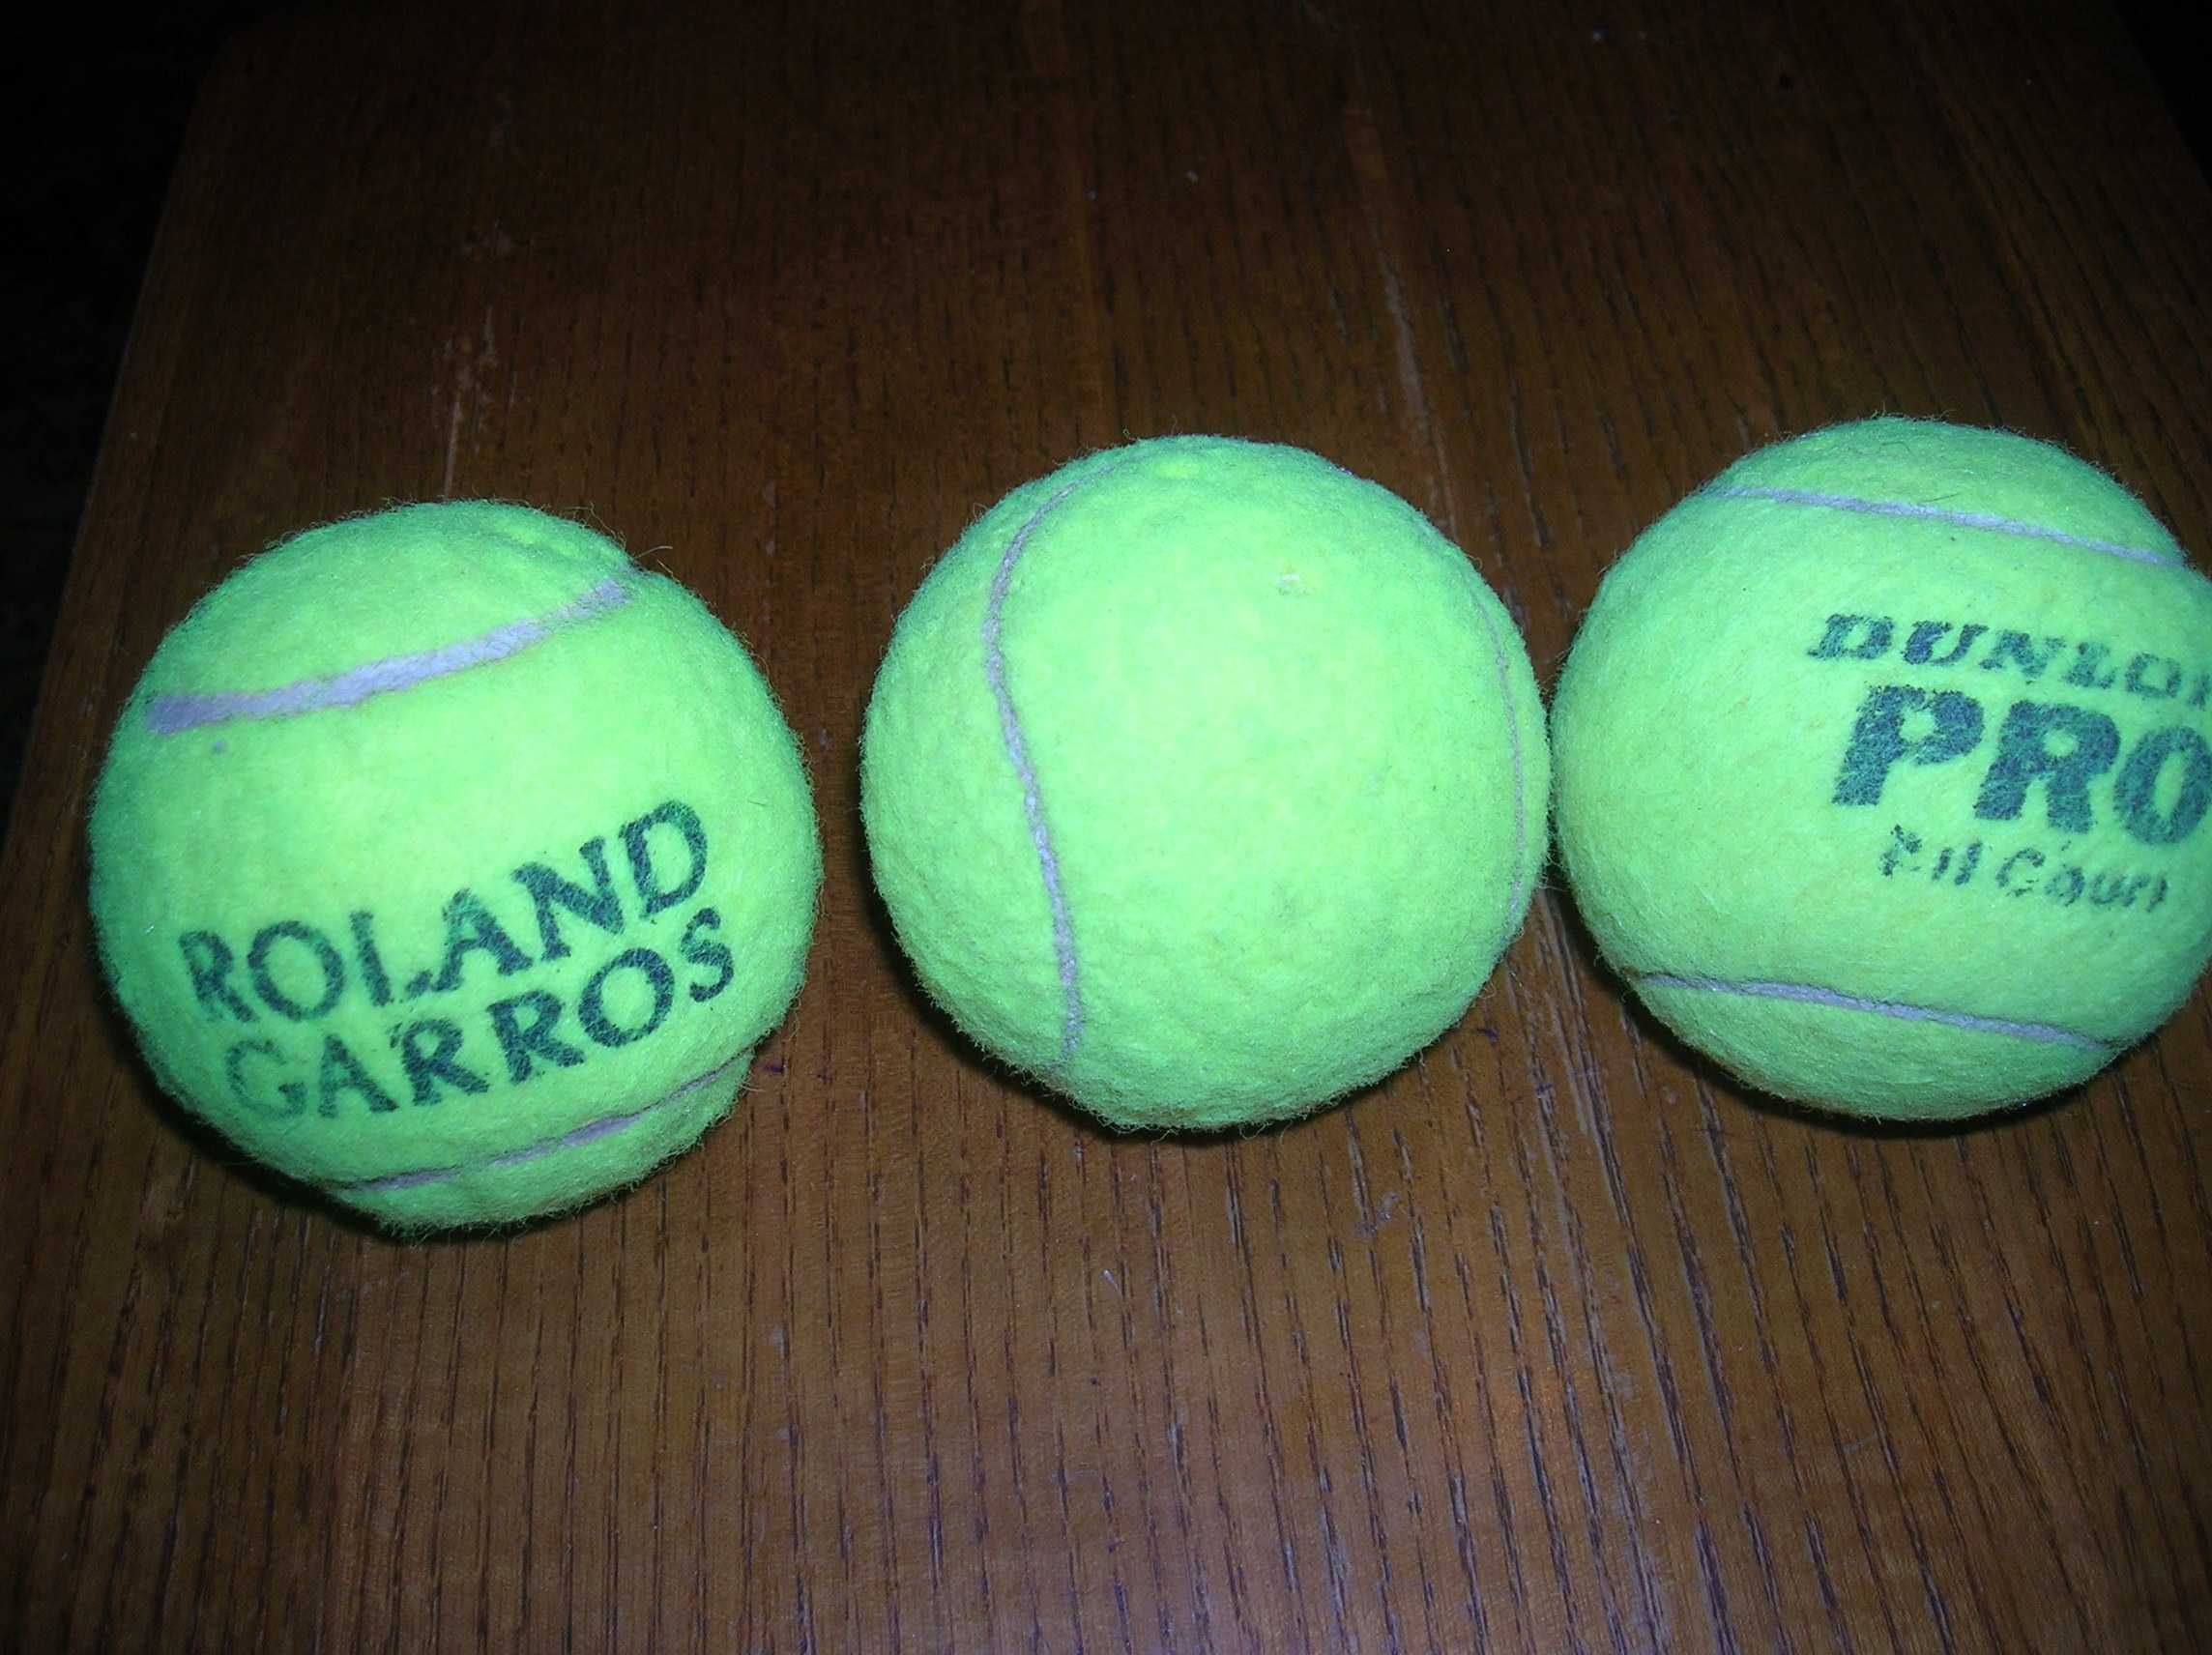 Теннисные мячики диаметр 7см разных фирм и мяч для бейсбола кожаный